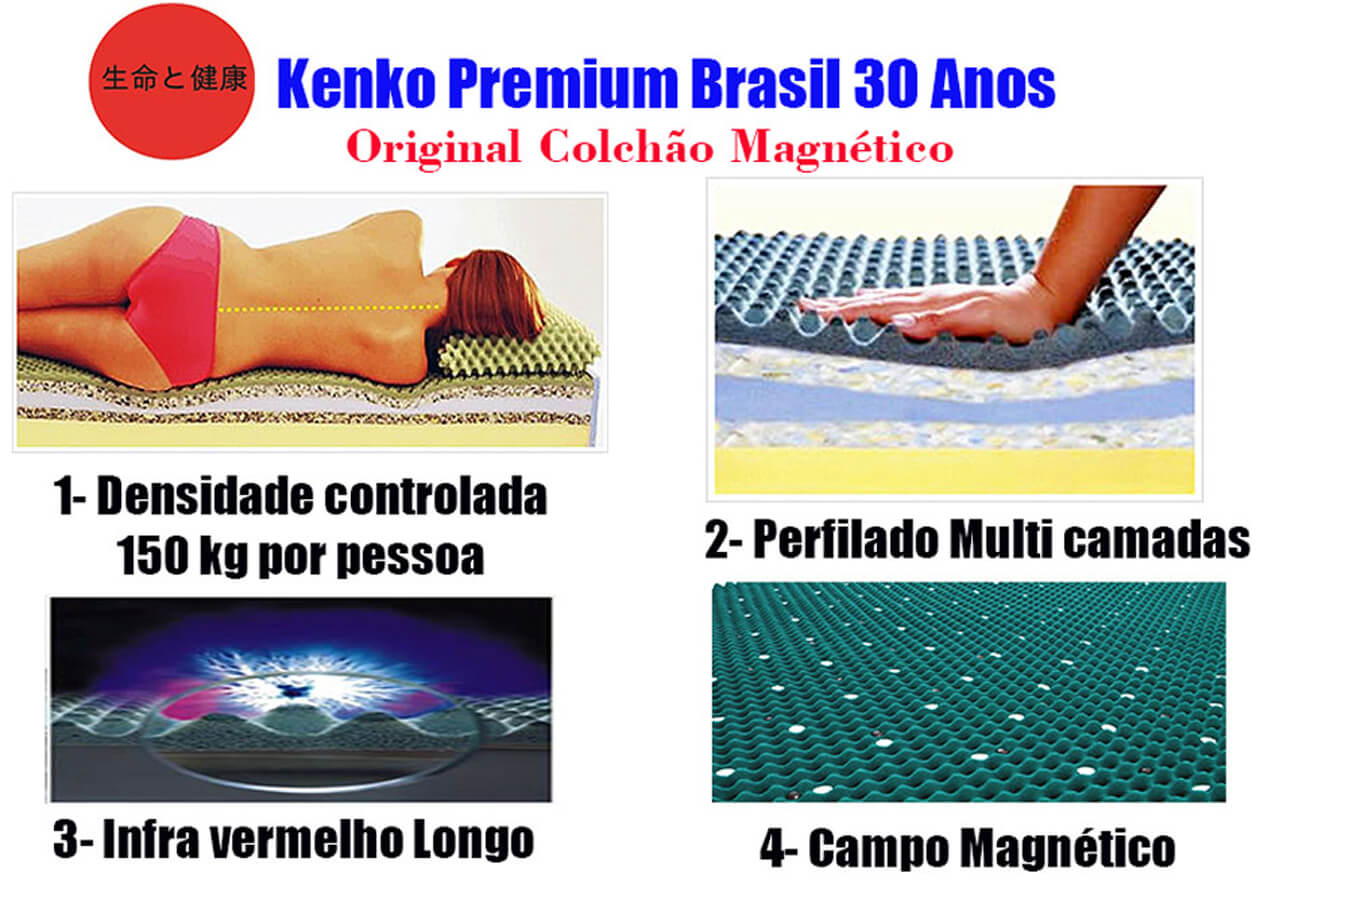 Colchão Magnético Solteiro Kenko Premium Standart 0,88x1,88x25cm  - Kenko Premium Colchões